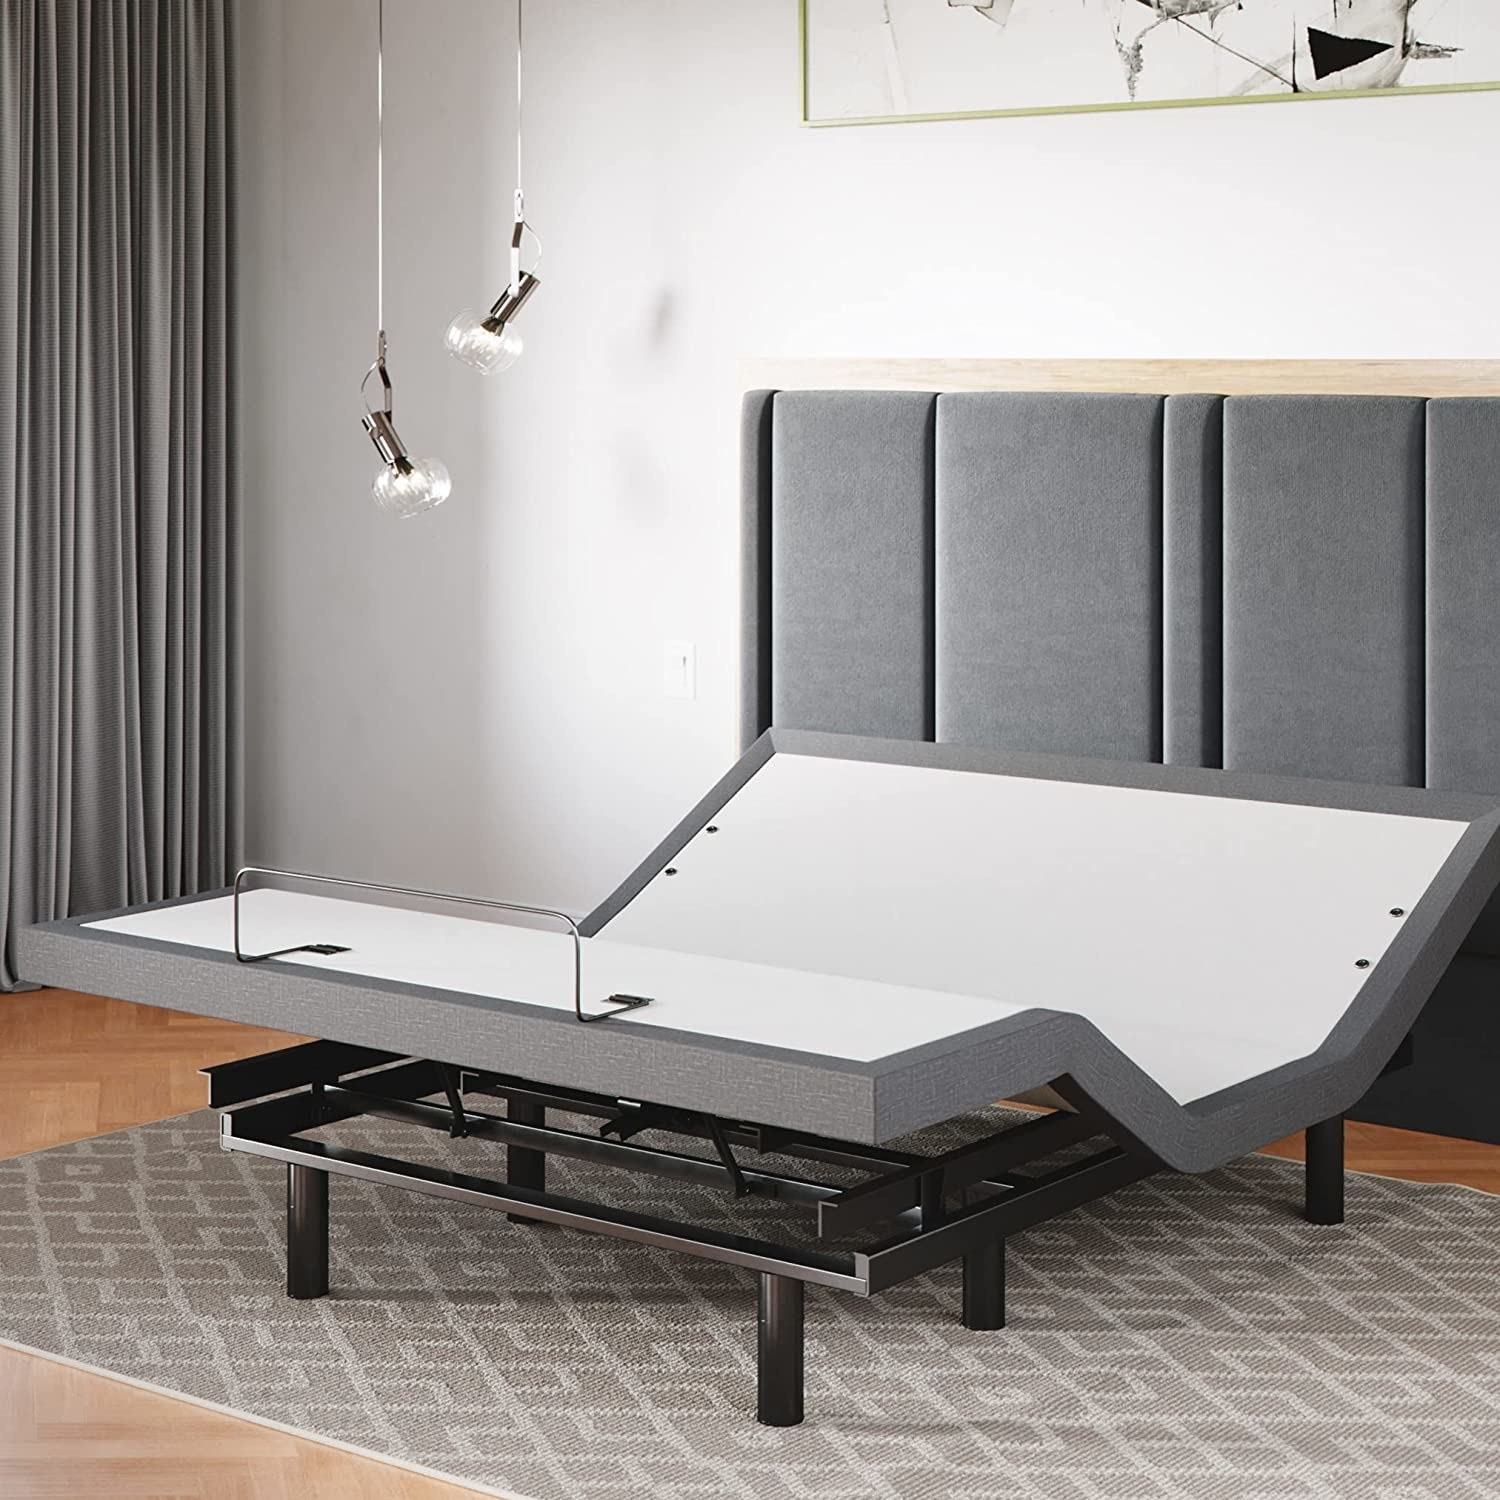 The adjustable bed frame